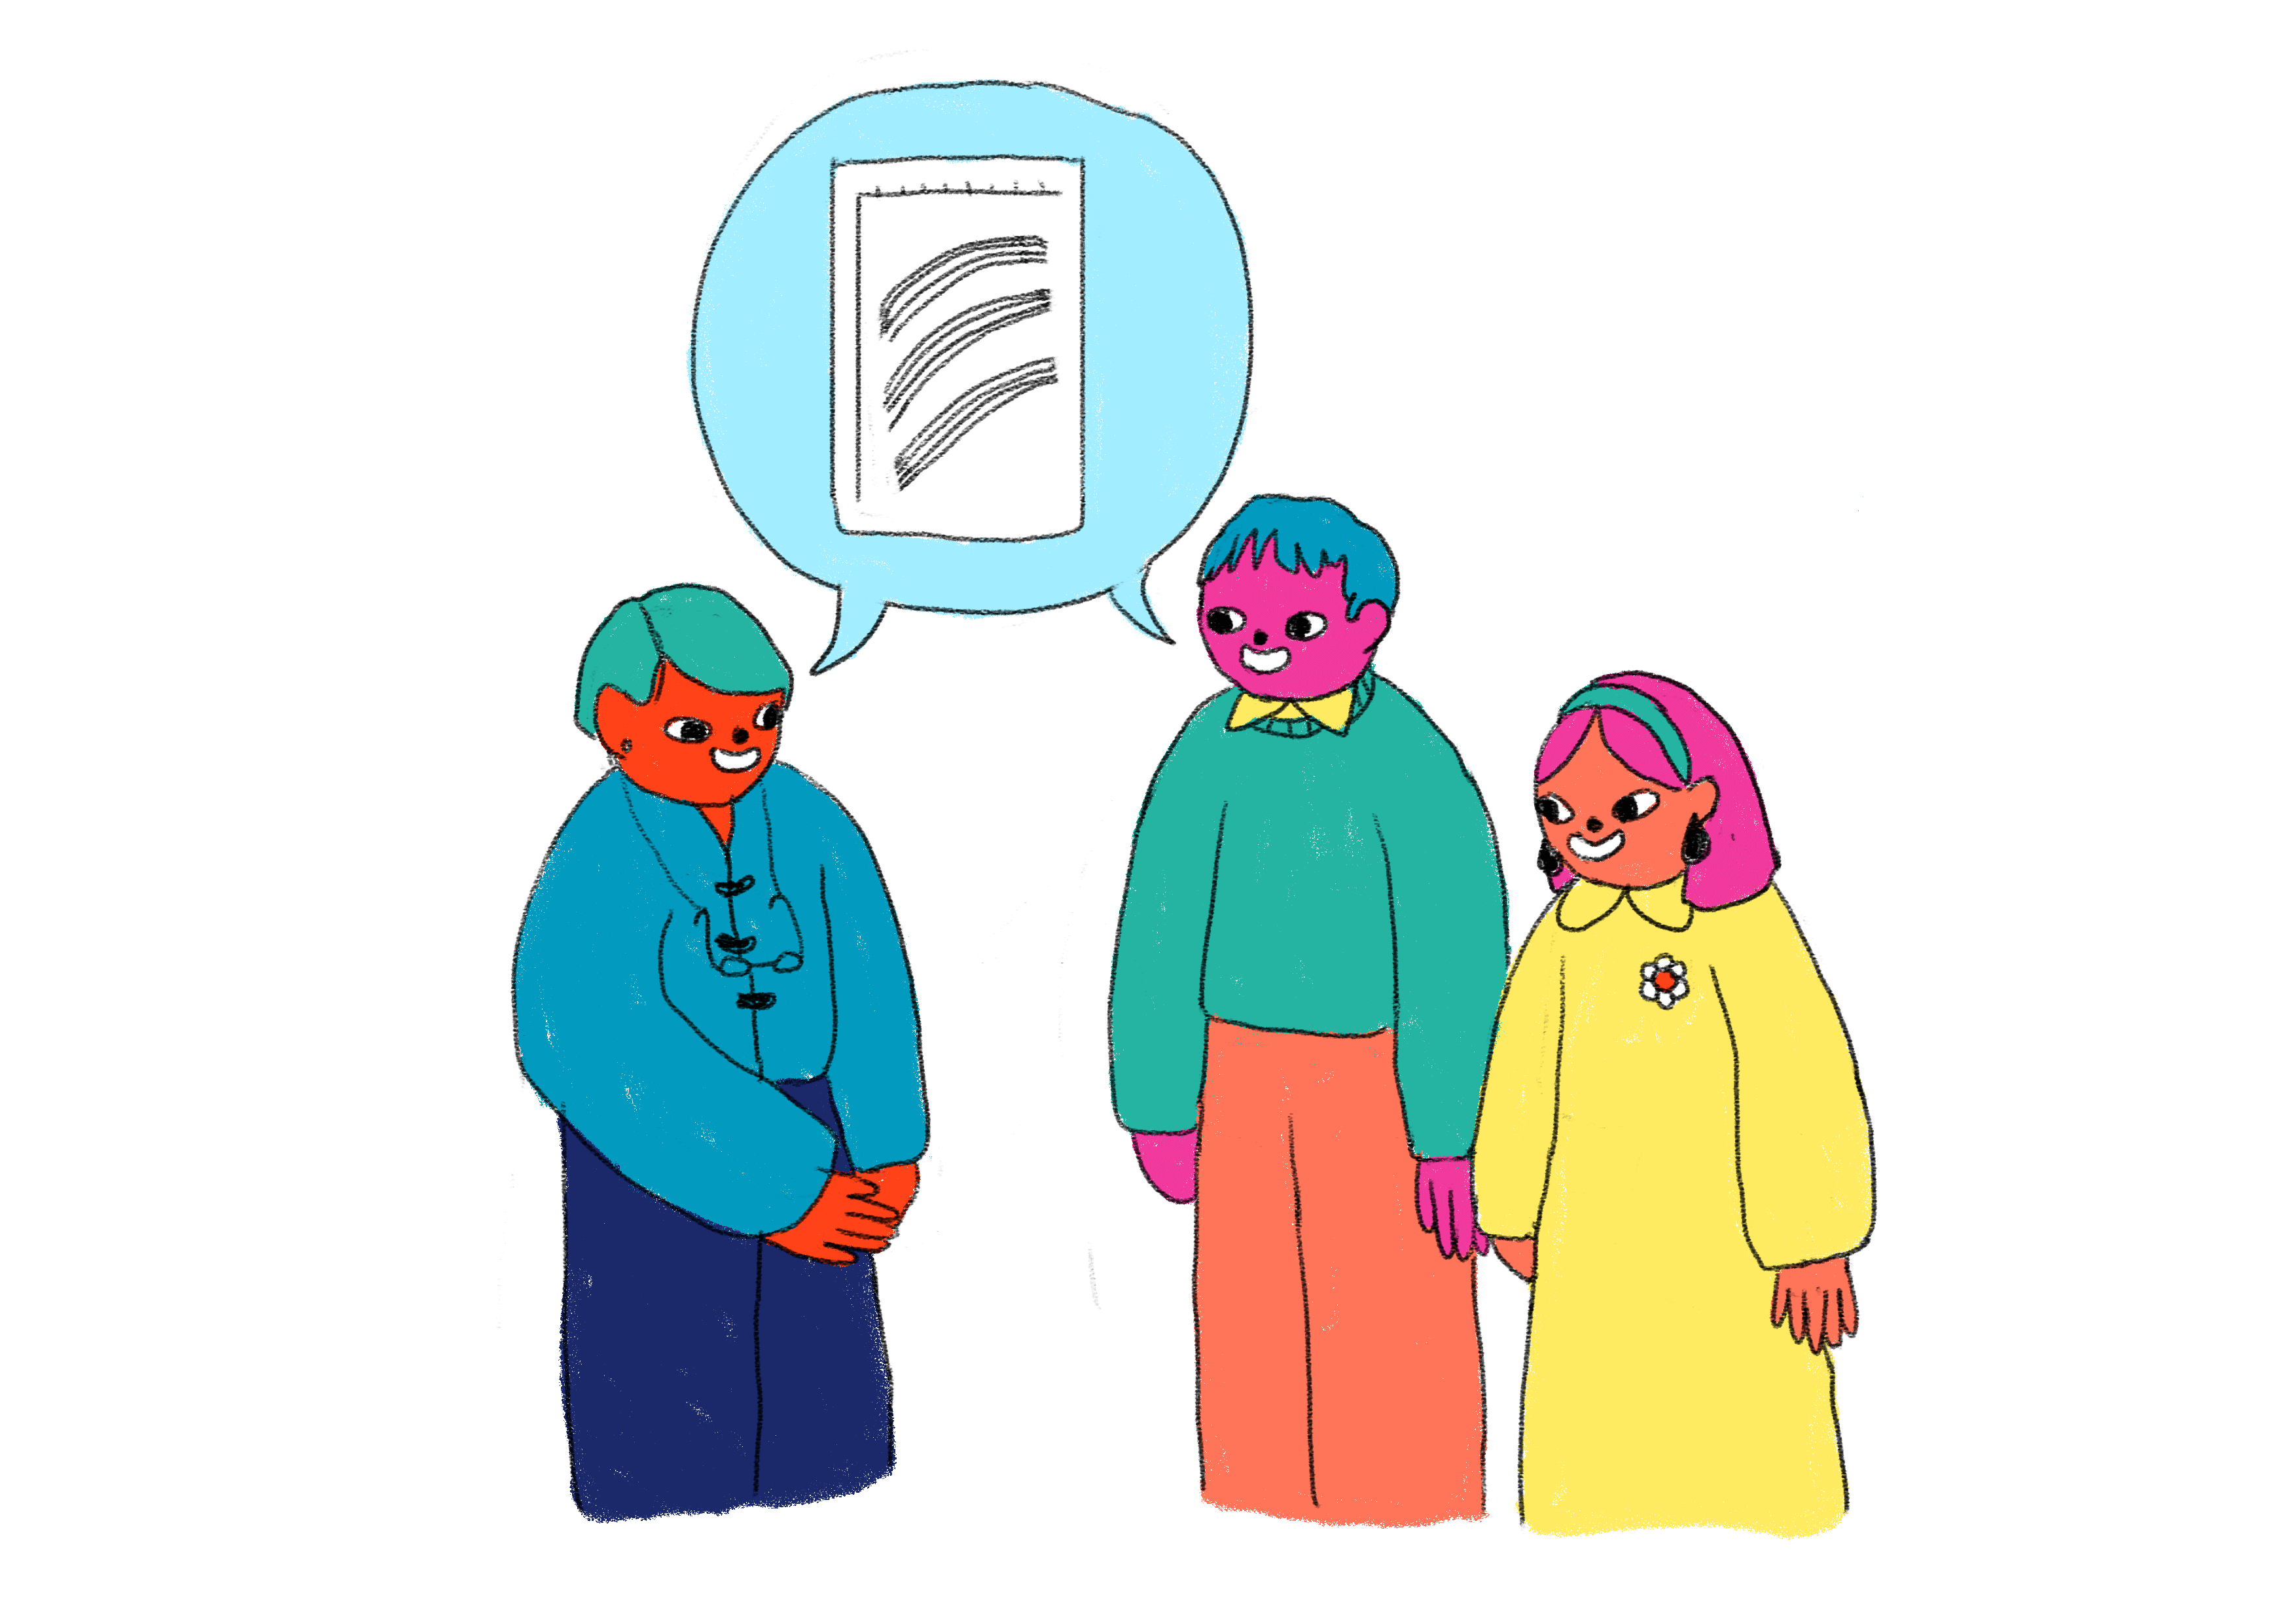 BabyGro parent and doctor deep in conversation - Parent is misunderstanding doctors advice.